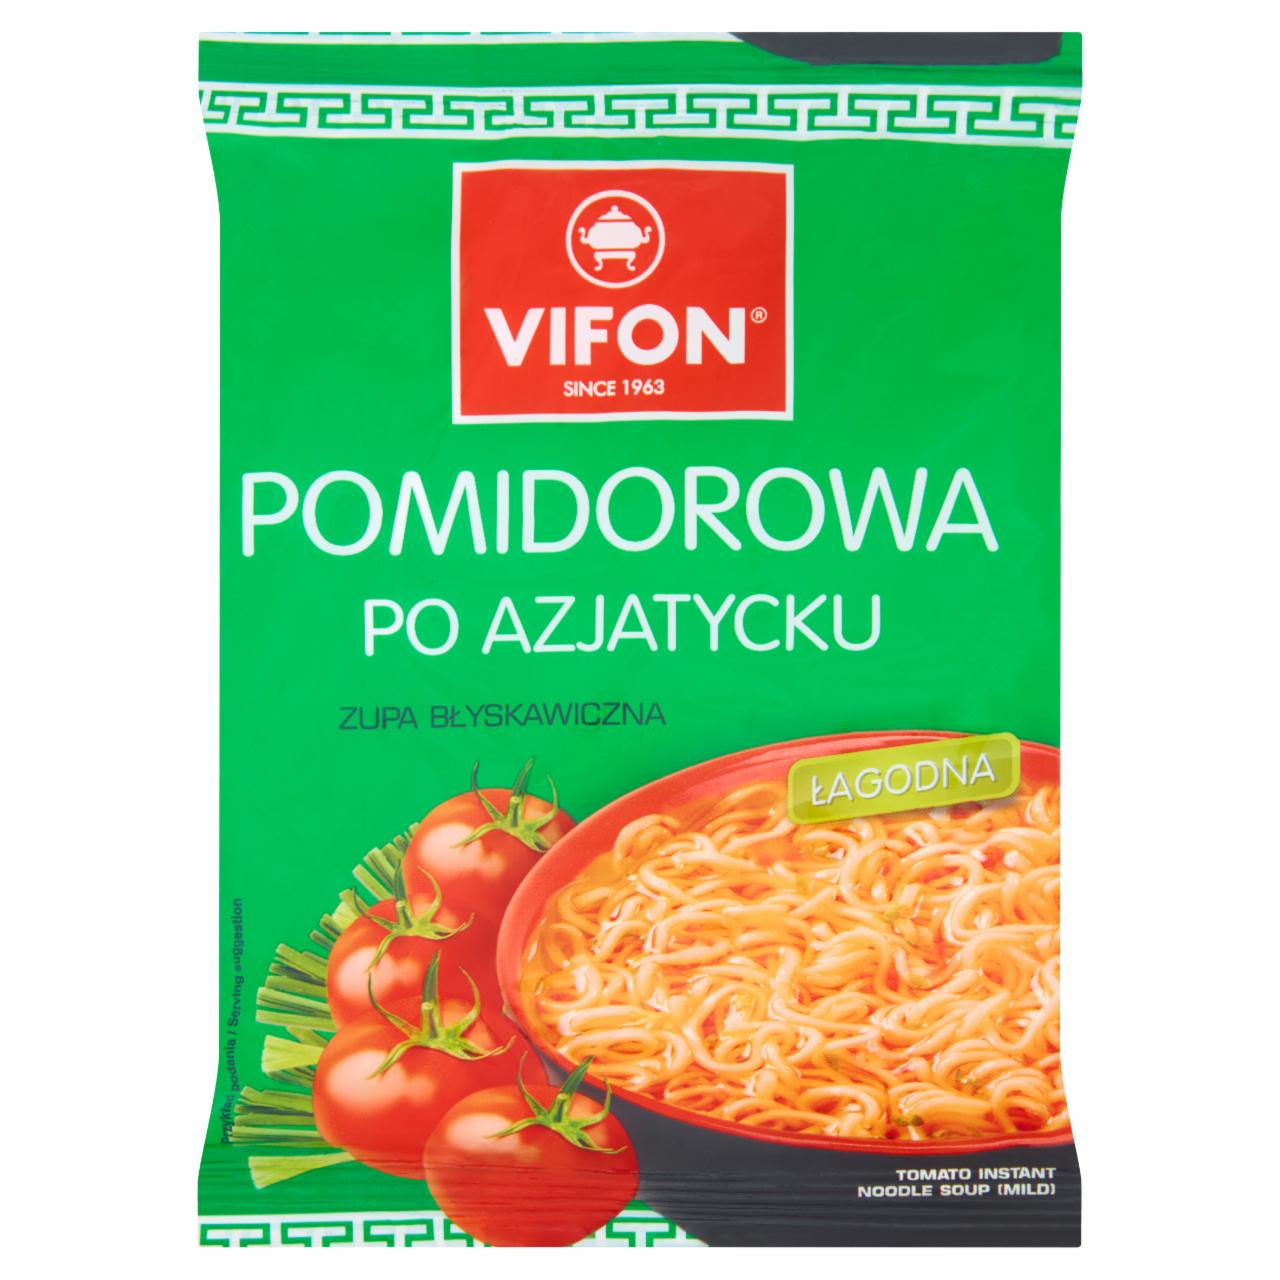 Zdjęcia - Vifon Zupa błyskawiczna pomidorowa po azjatycku 70 g